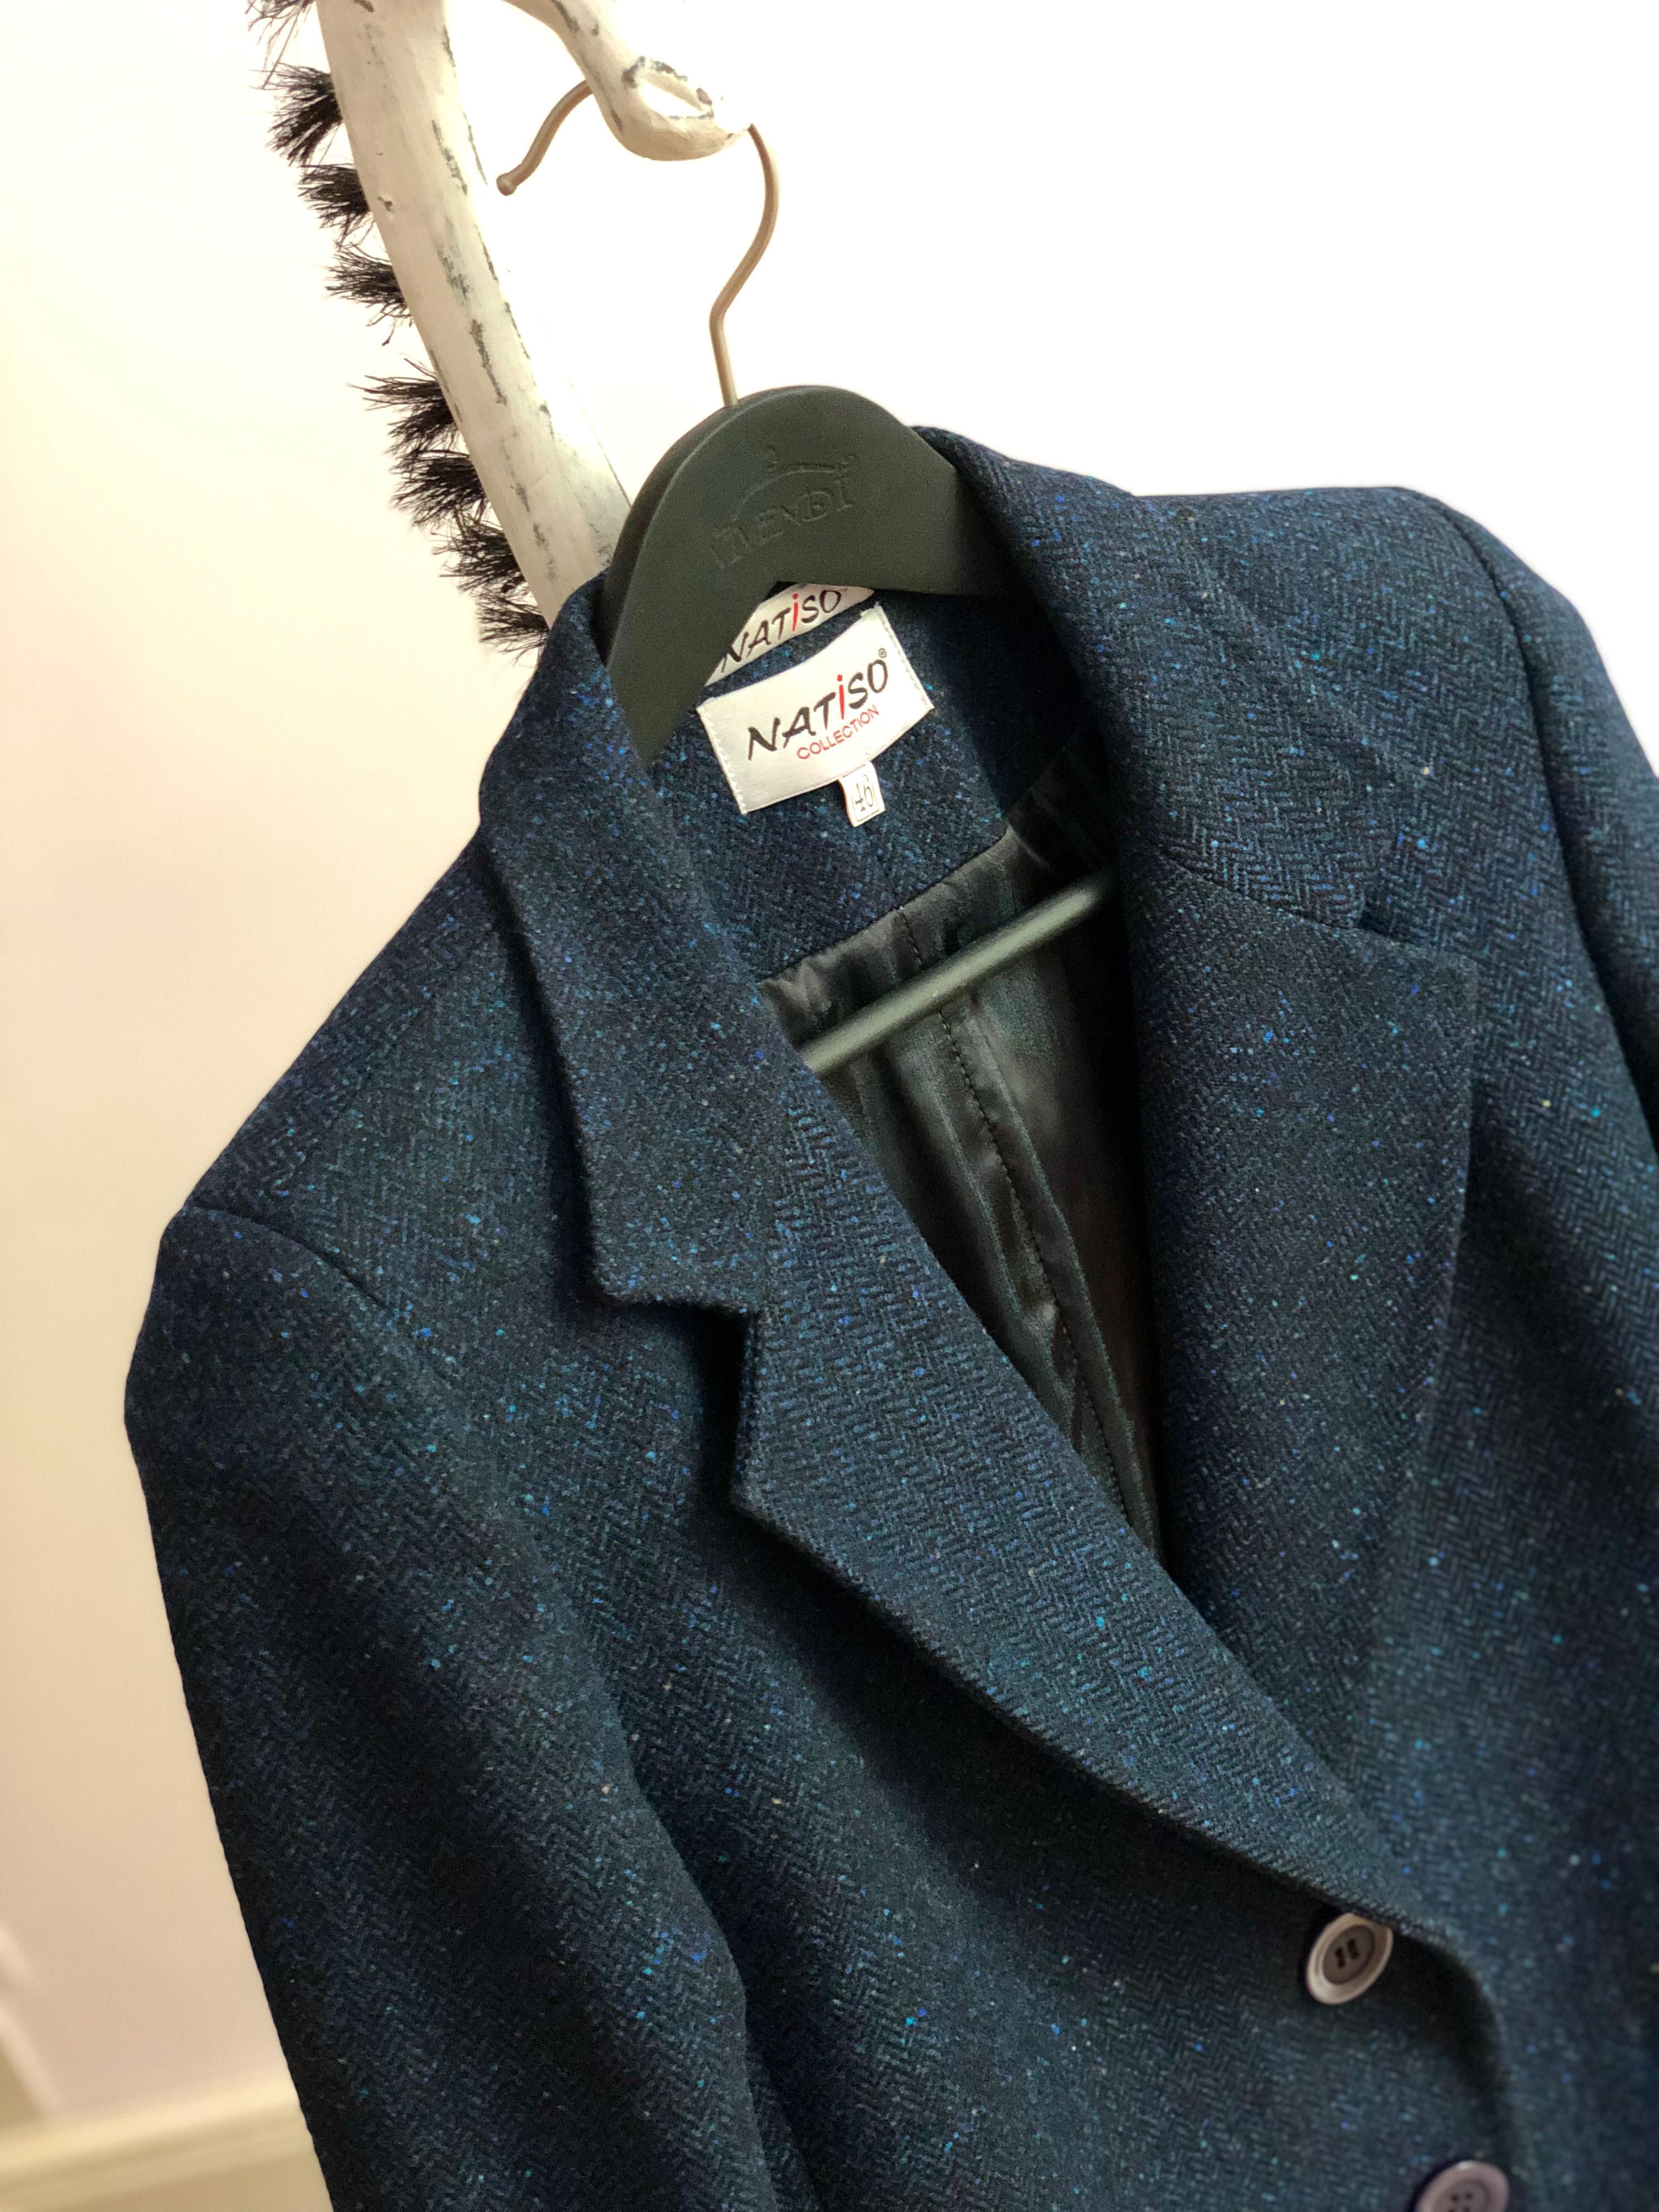 Пиджак пальто т.синій твид вовняний женский 46/48 M/L полупальто жіноч